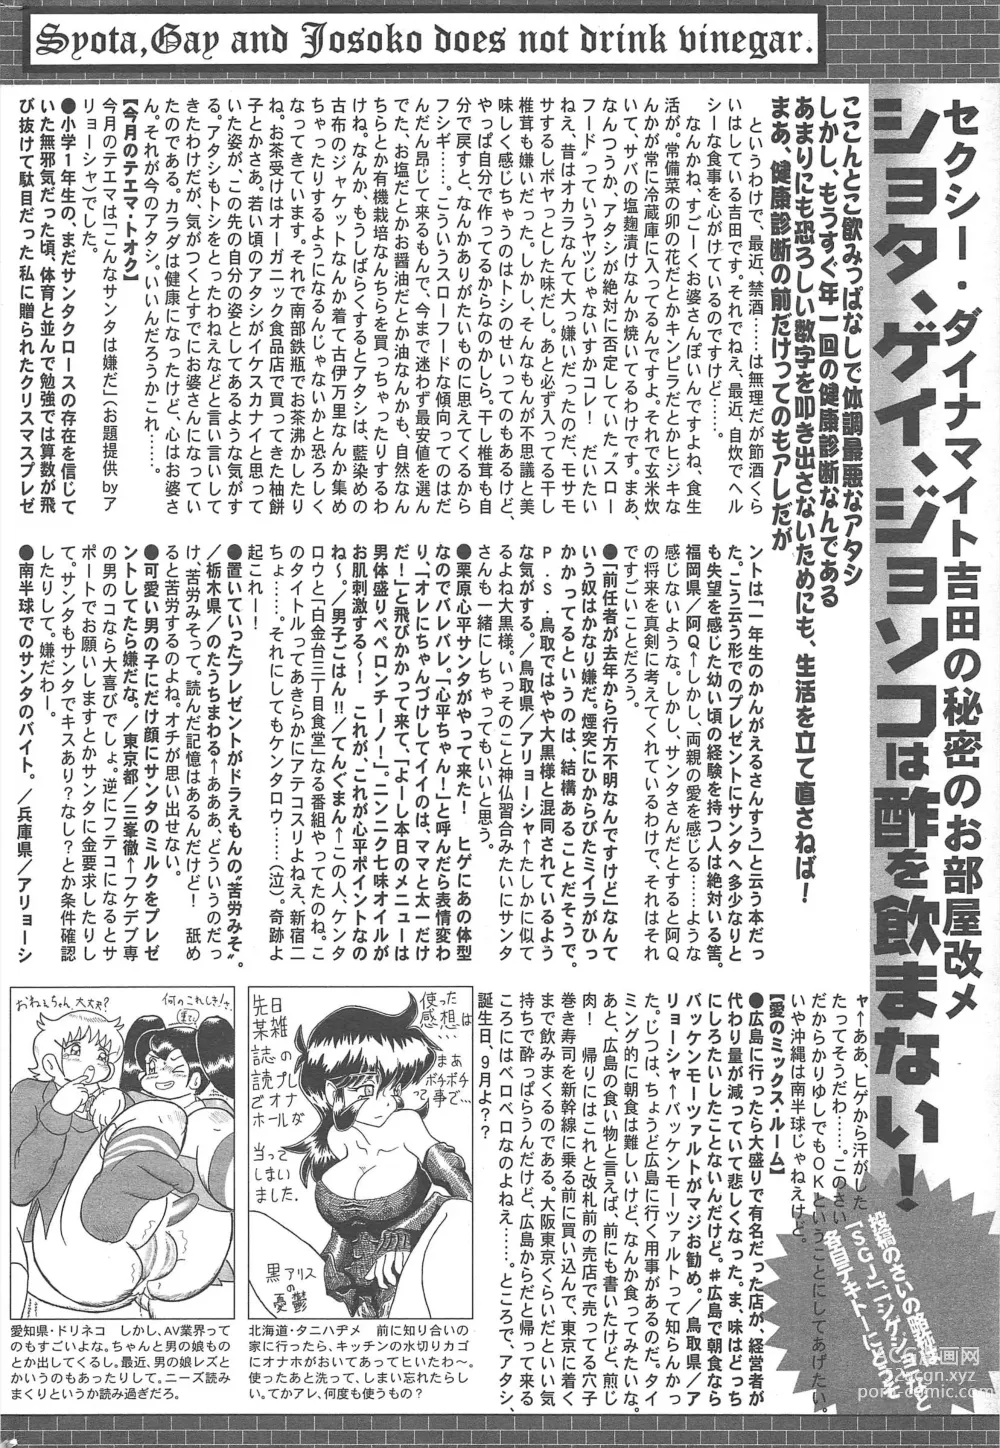 Page 324 of manga Manga Bangaichi 2013-01